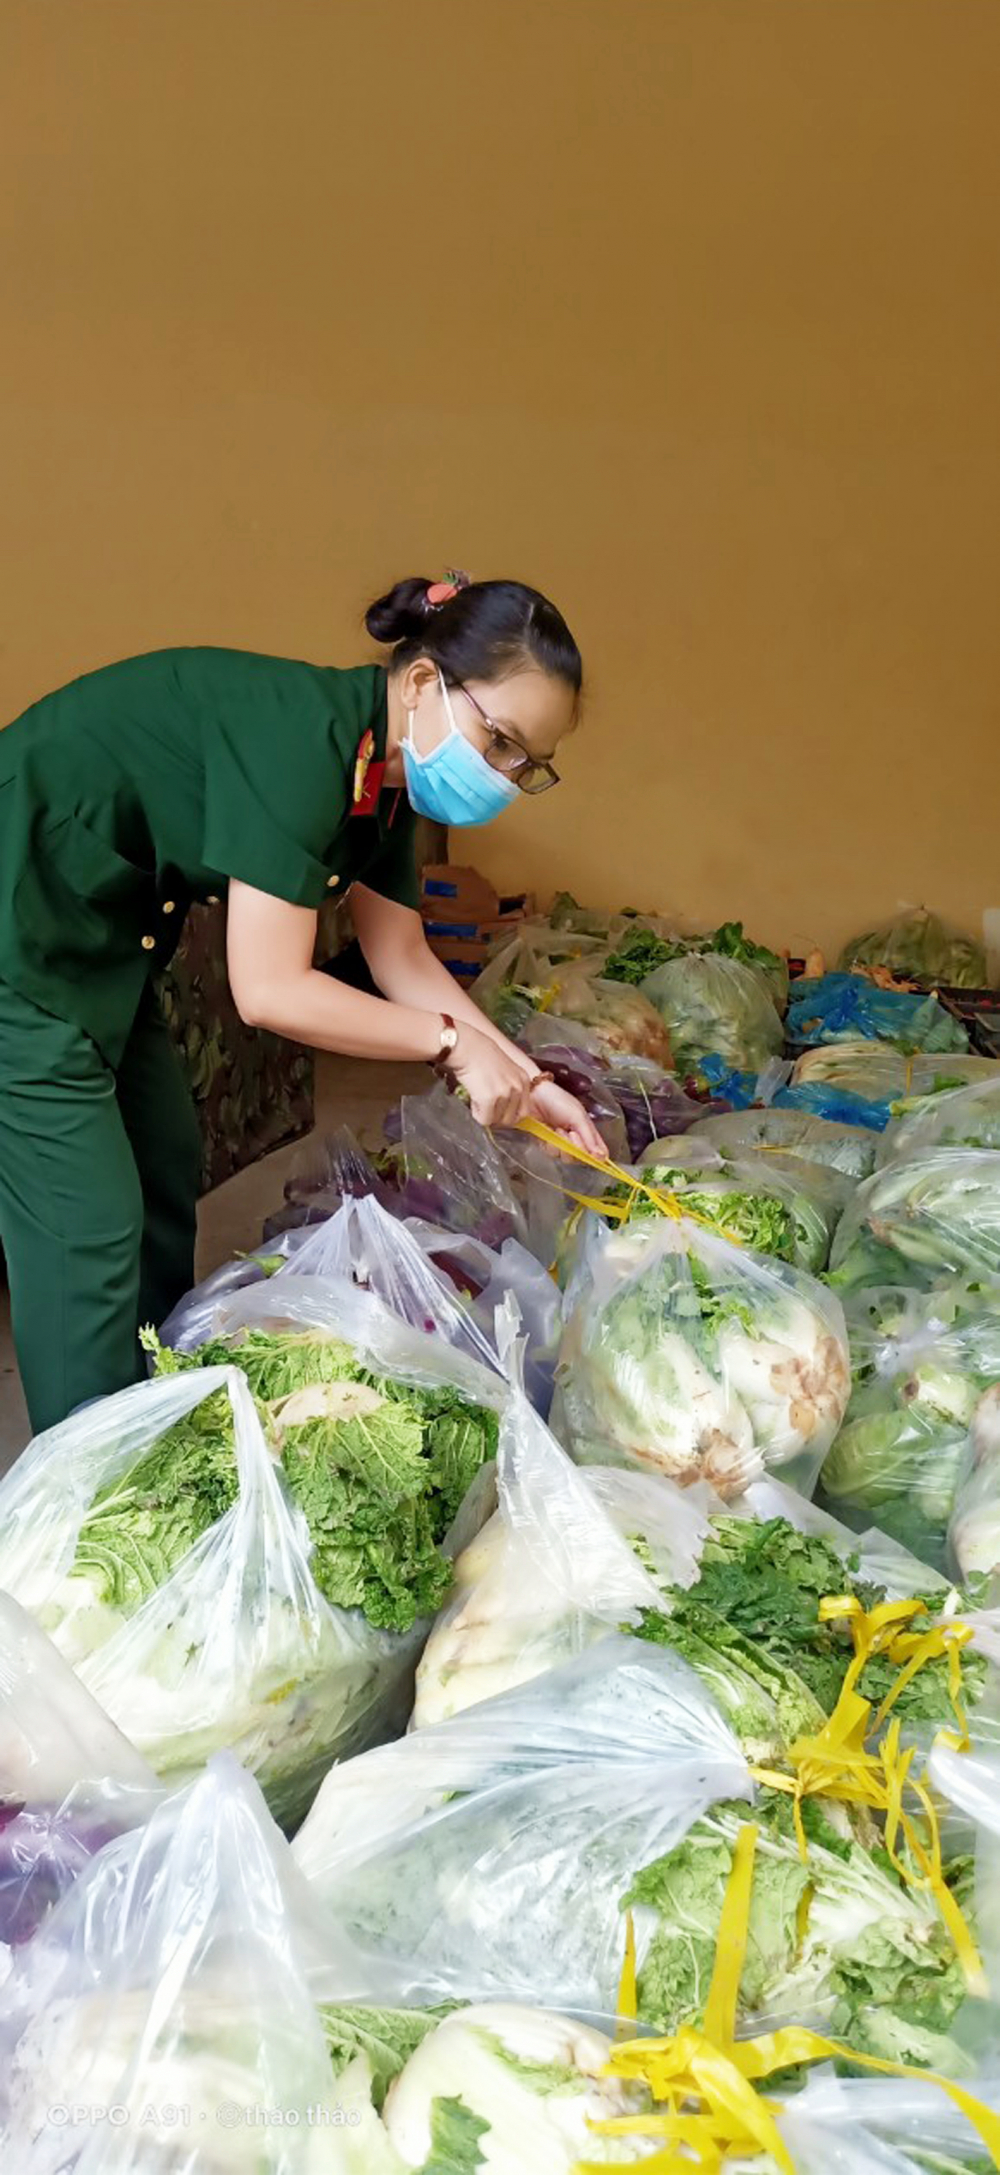 Đại úy Nguyễn Thị Thu Thảo đang phân rau do các mạnh thường quân gửi tặng để mang ra phiên chợ 0 đồng hỗ trợ cho người dân trong những ngày chống dịch căng thẳng